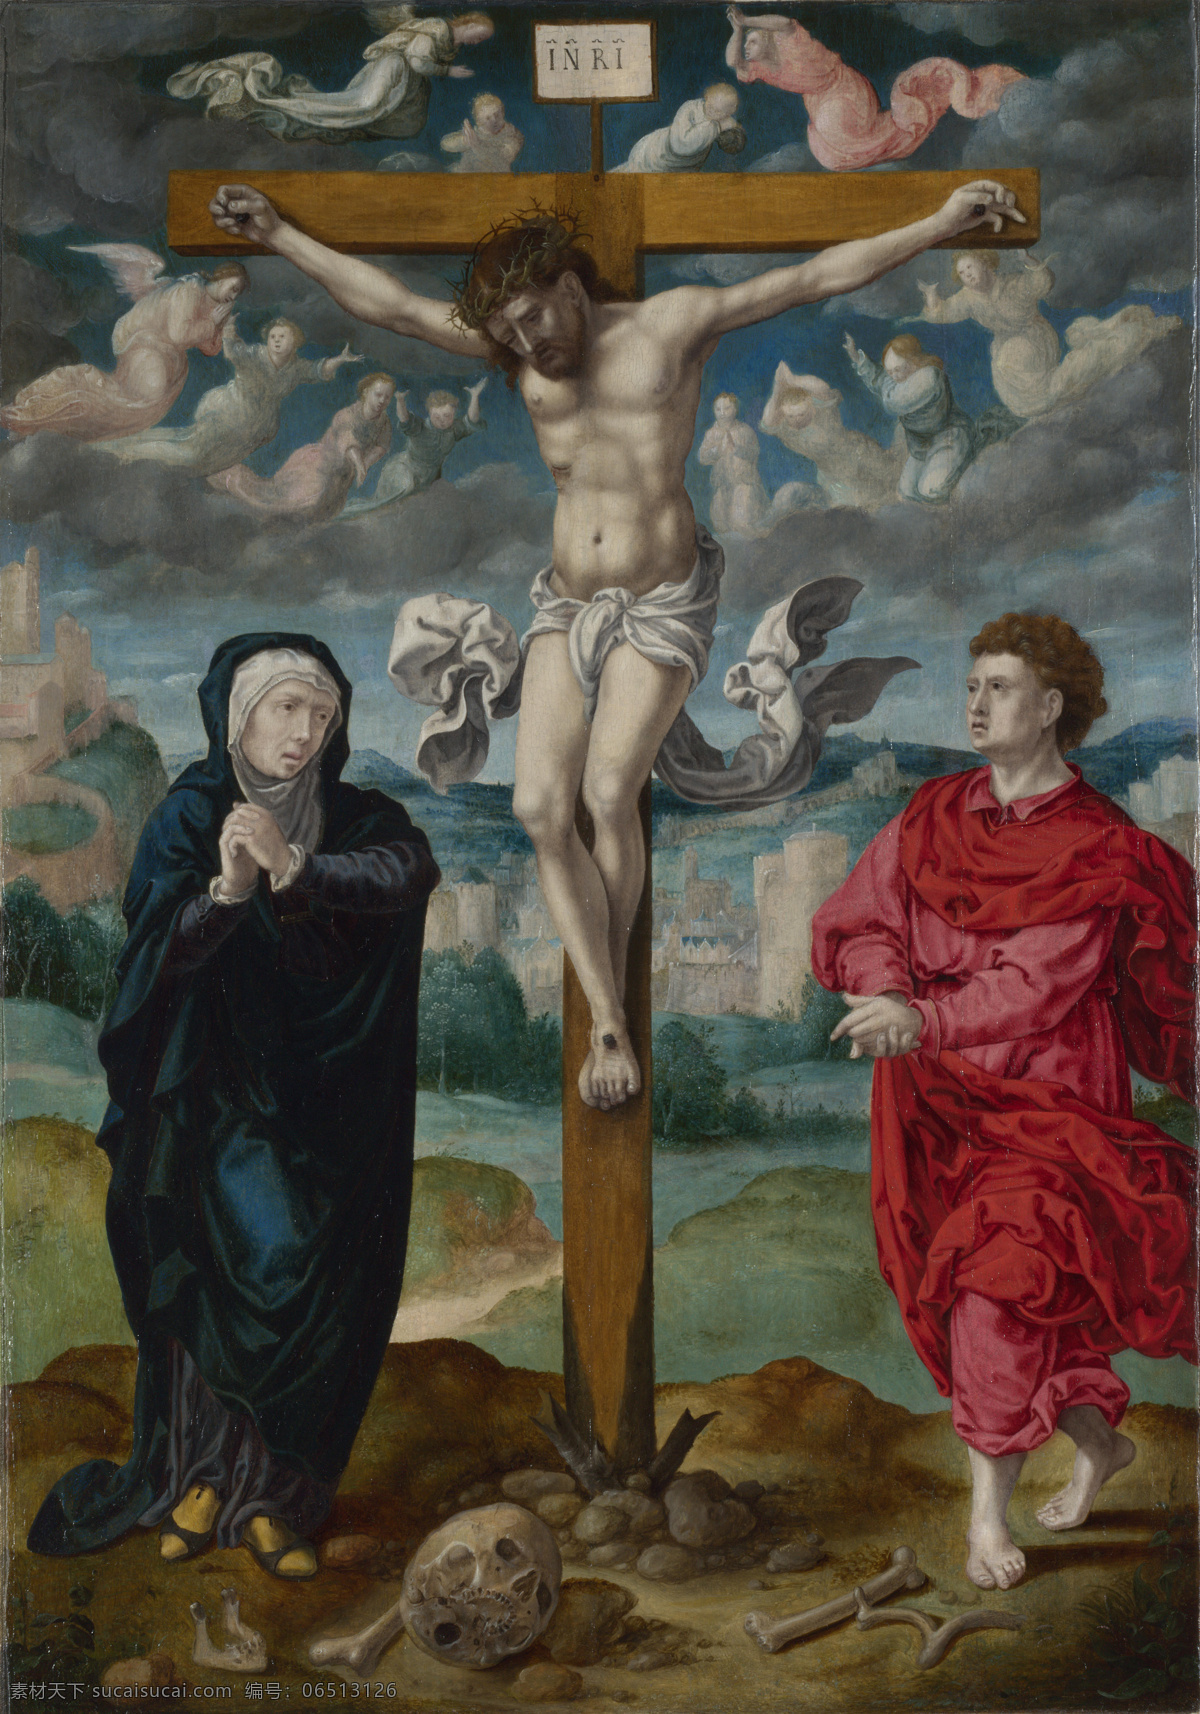 耶稣受难 十字架 人物油画 油画 欧洲油画 壁画 精品 装饰画 美术 精美油画 名画 名作 艺术品 欧式绘画 绘画书法 文化艺术